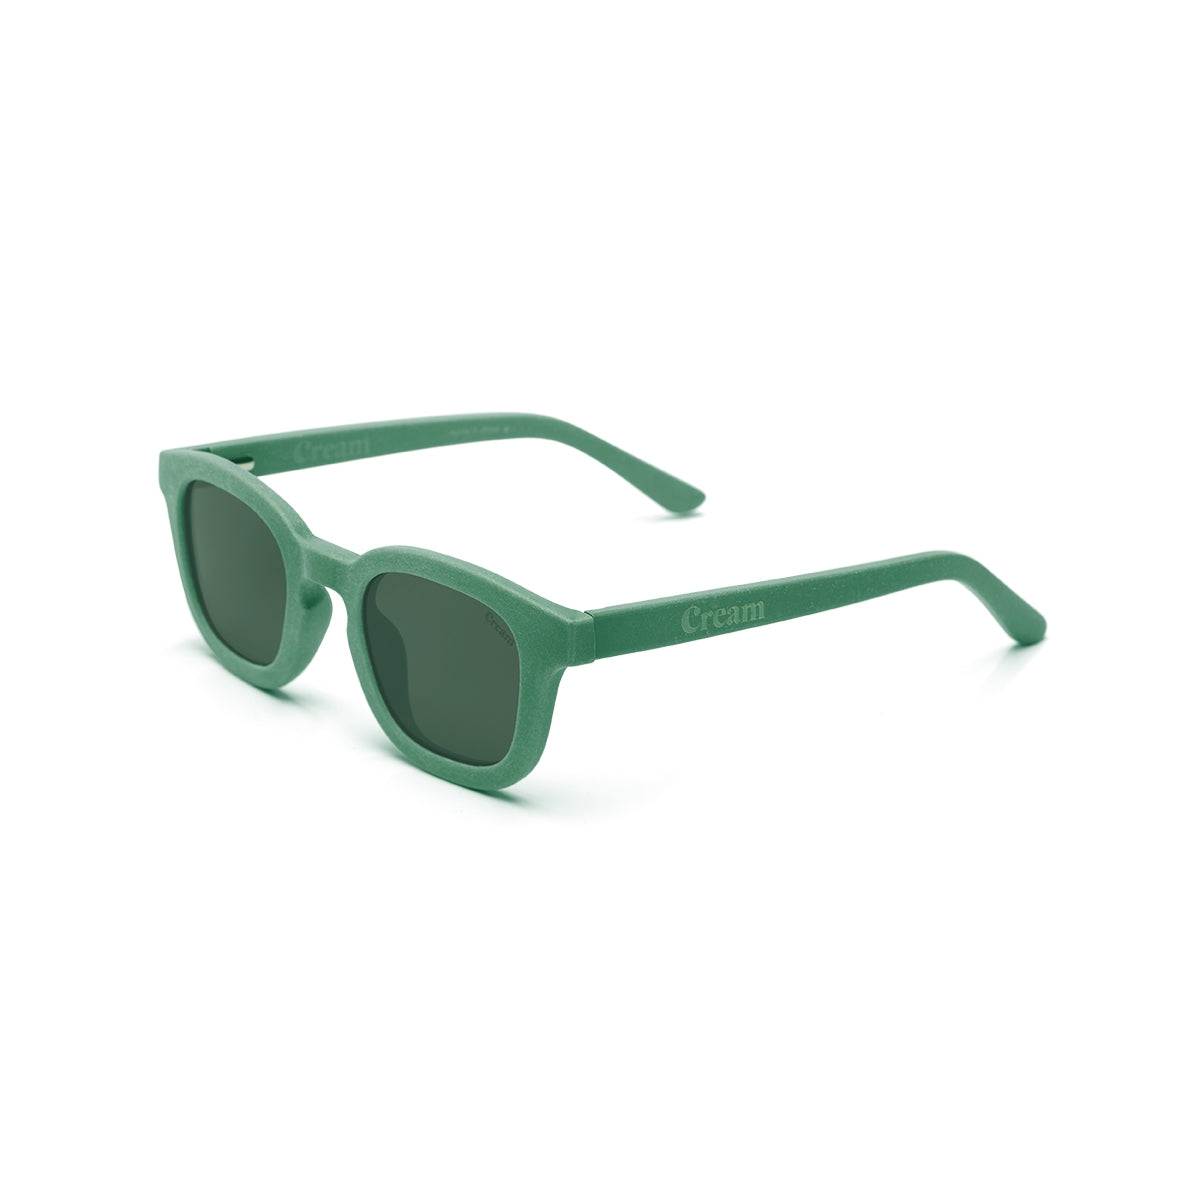 Kindersonnenbrille - Cream 02 | Bright Green